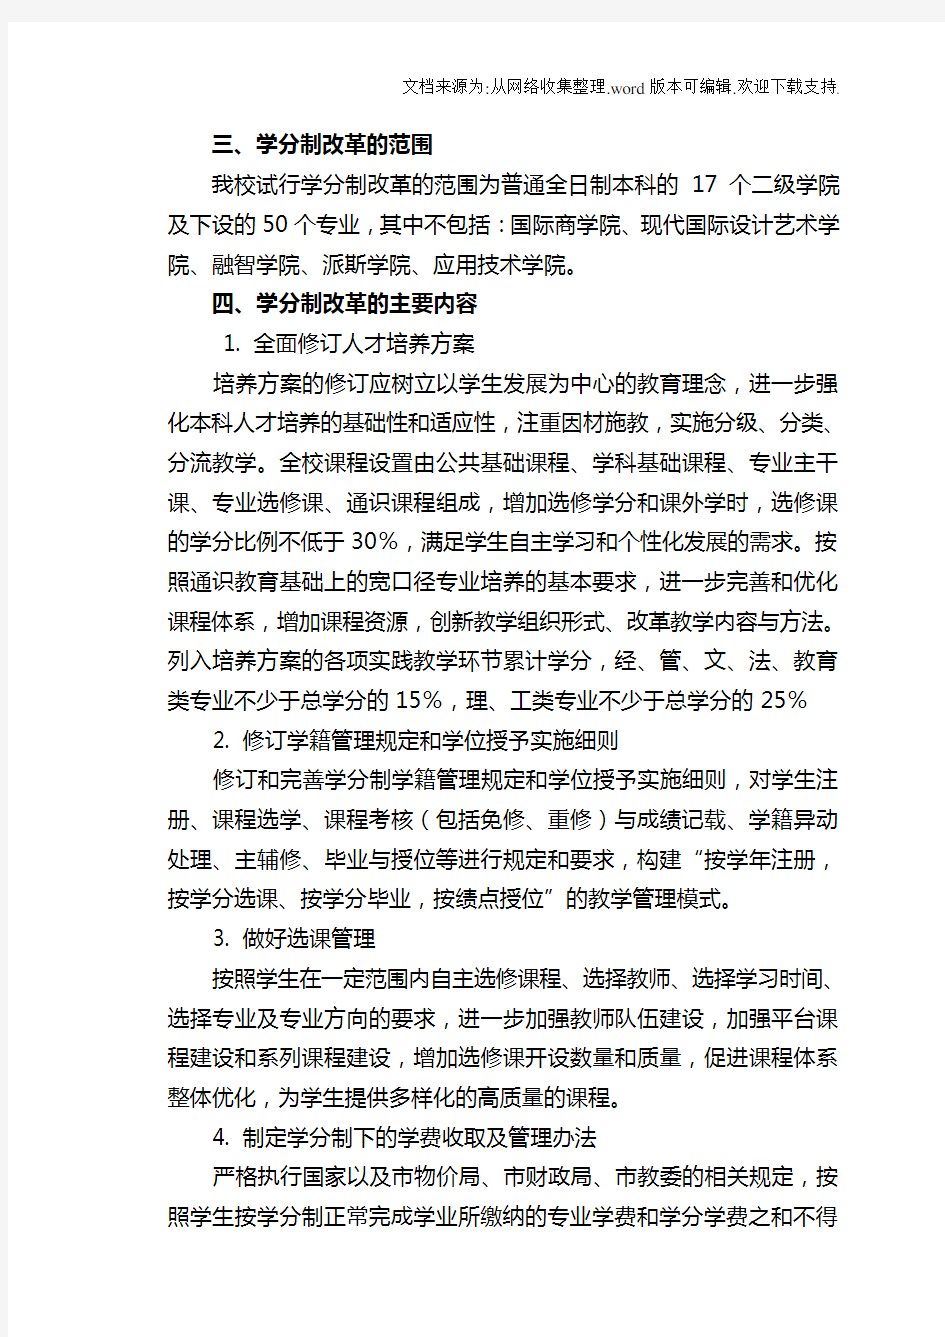 重庆工商大学学分制改革实施方案